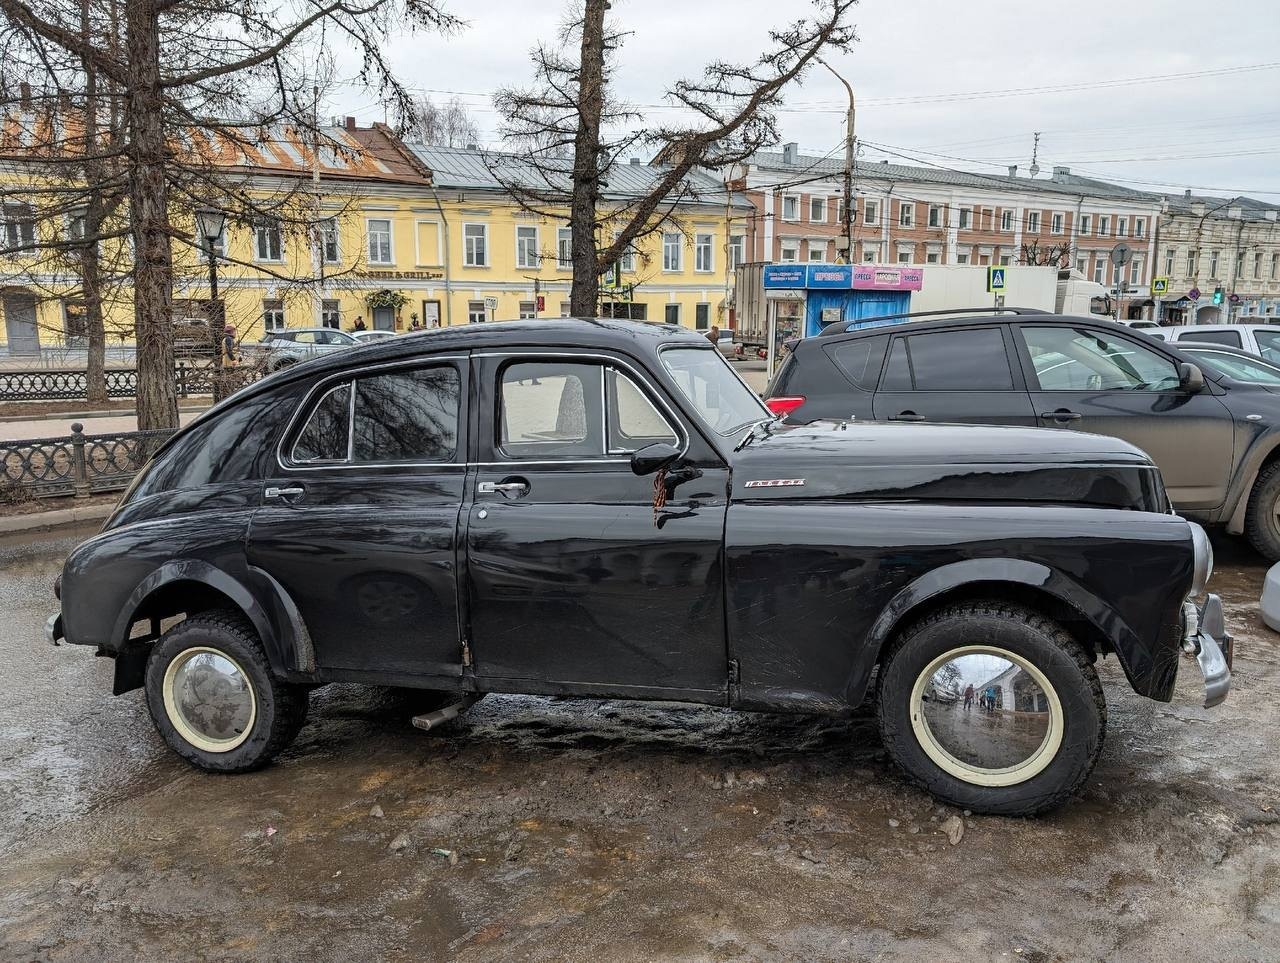 Уникальная машина из прошлого появилась на улицах Костромы